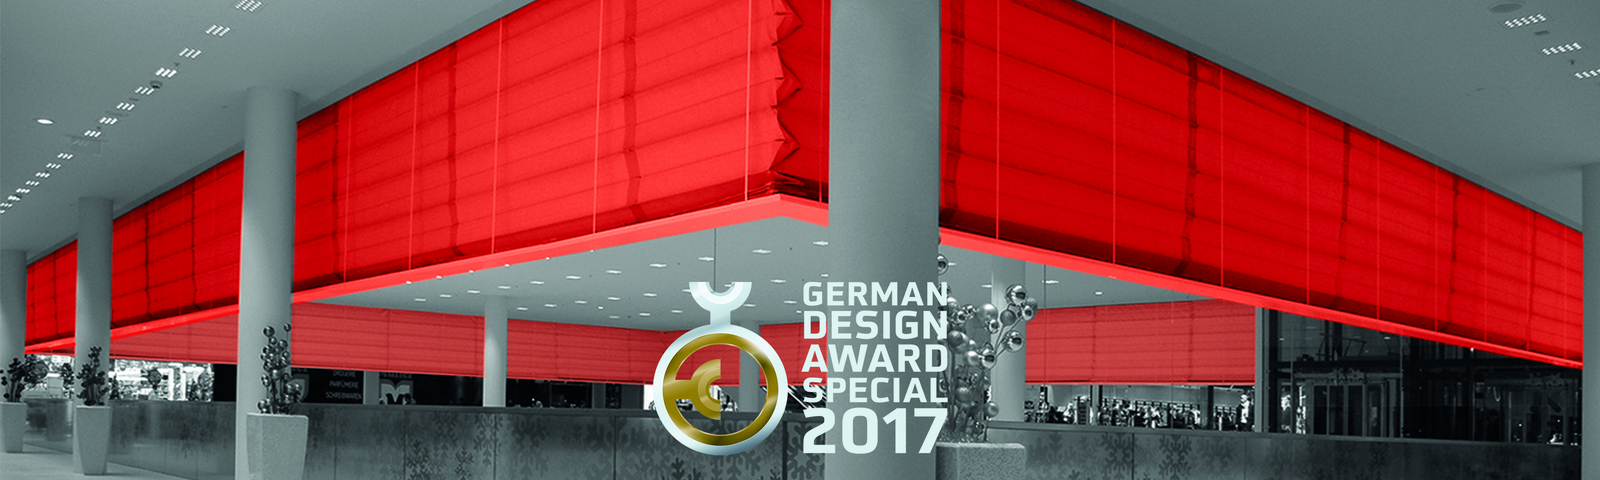 German Design Award 2017 voor Stöbich-brandscherm